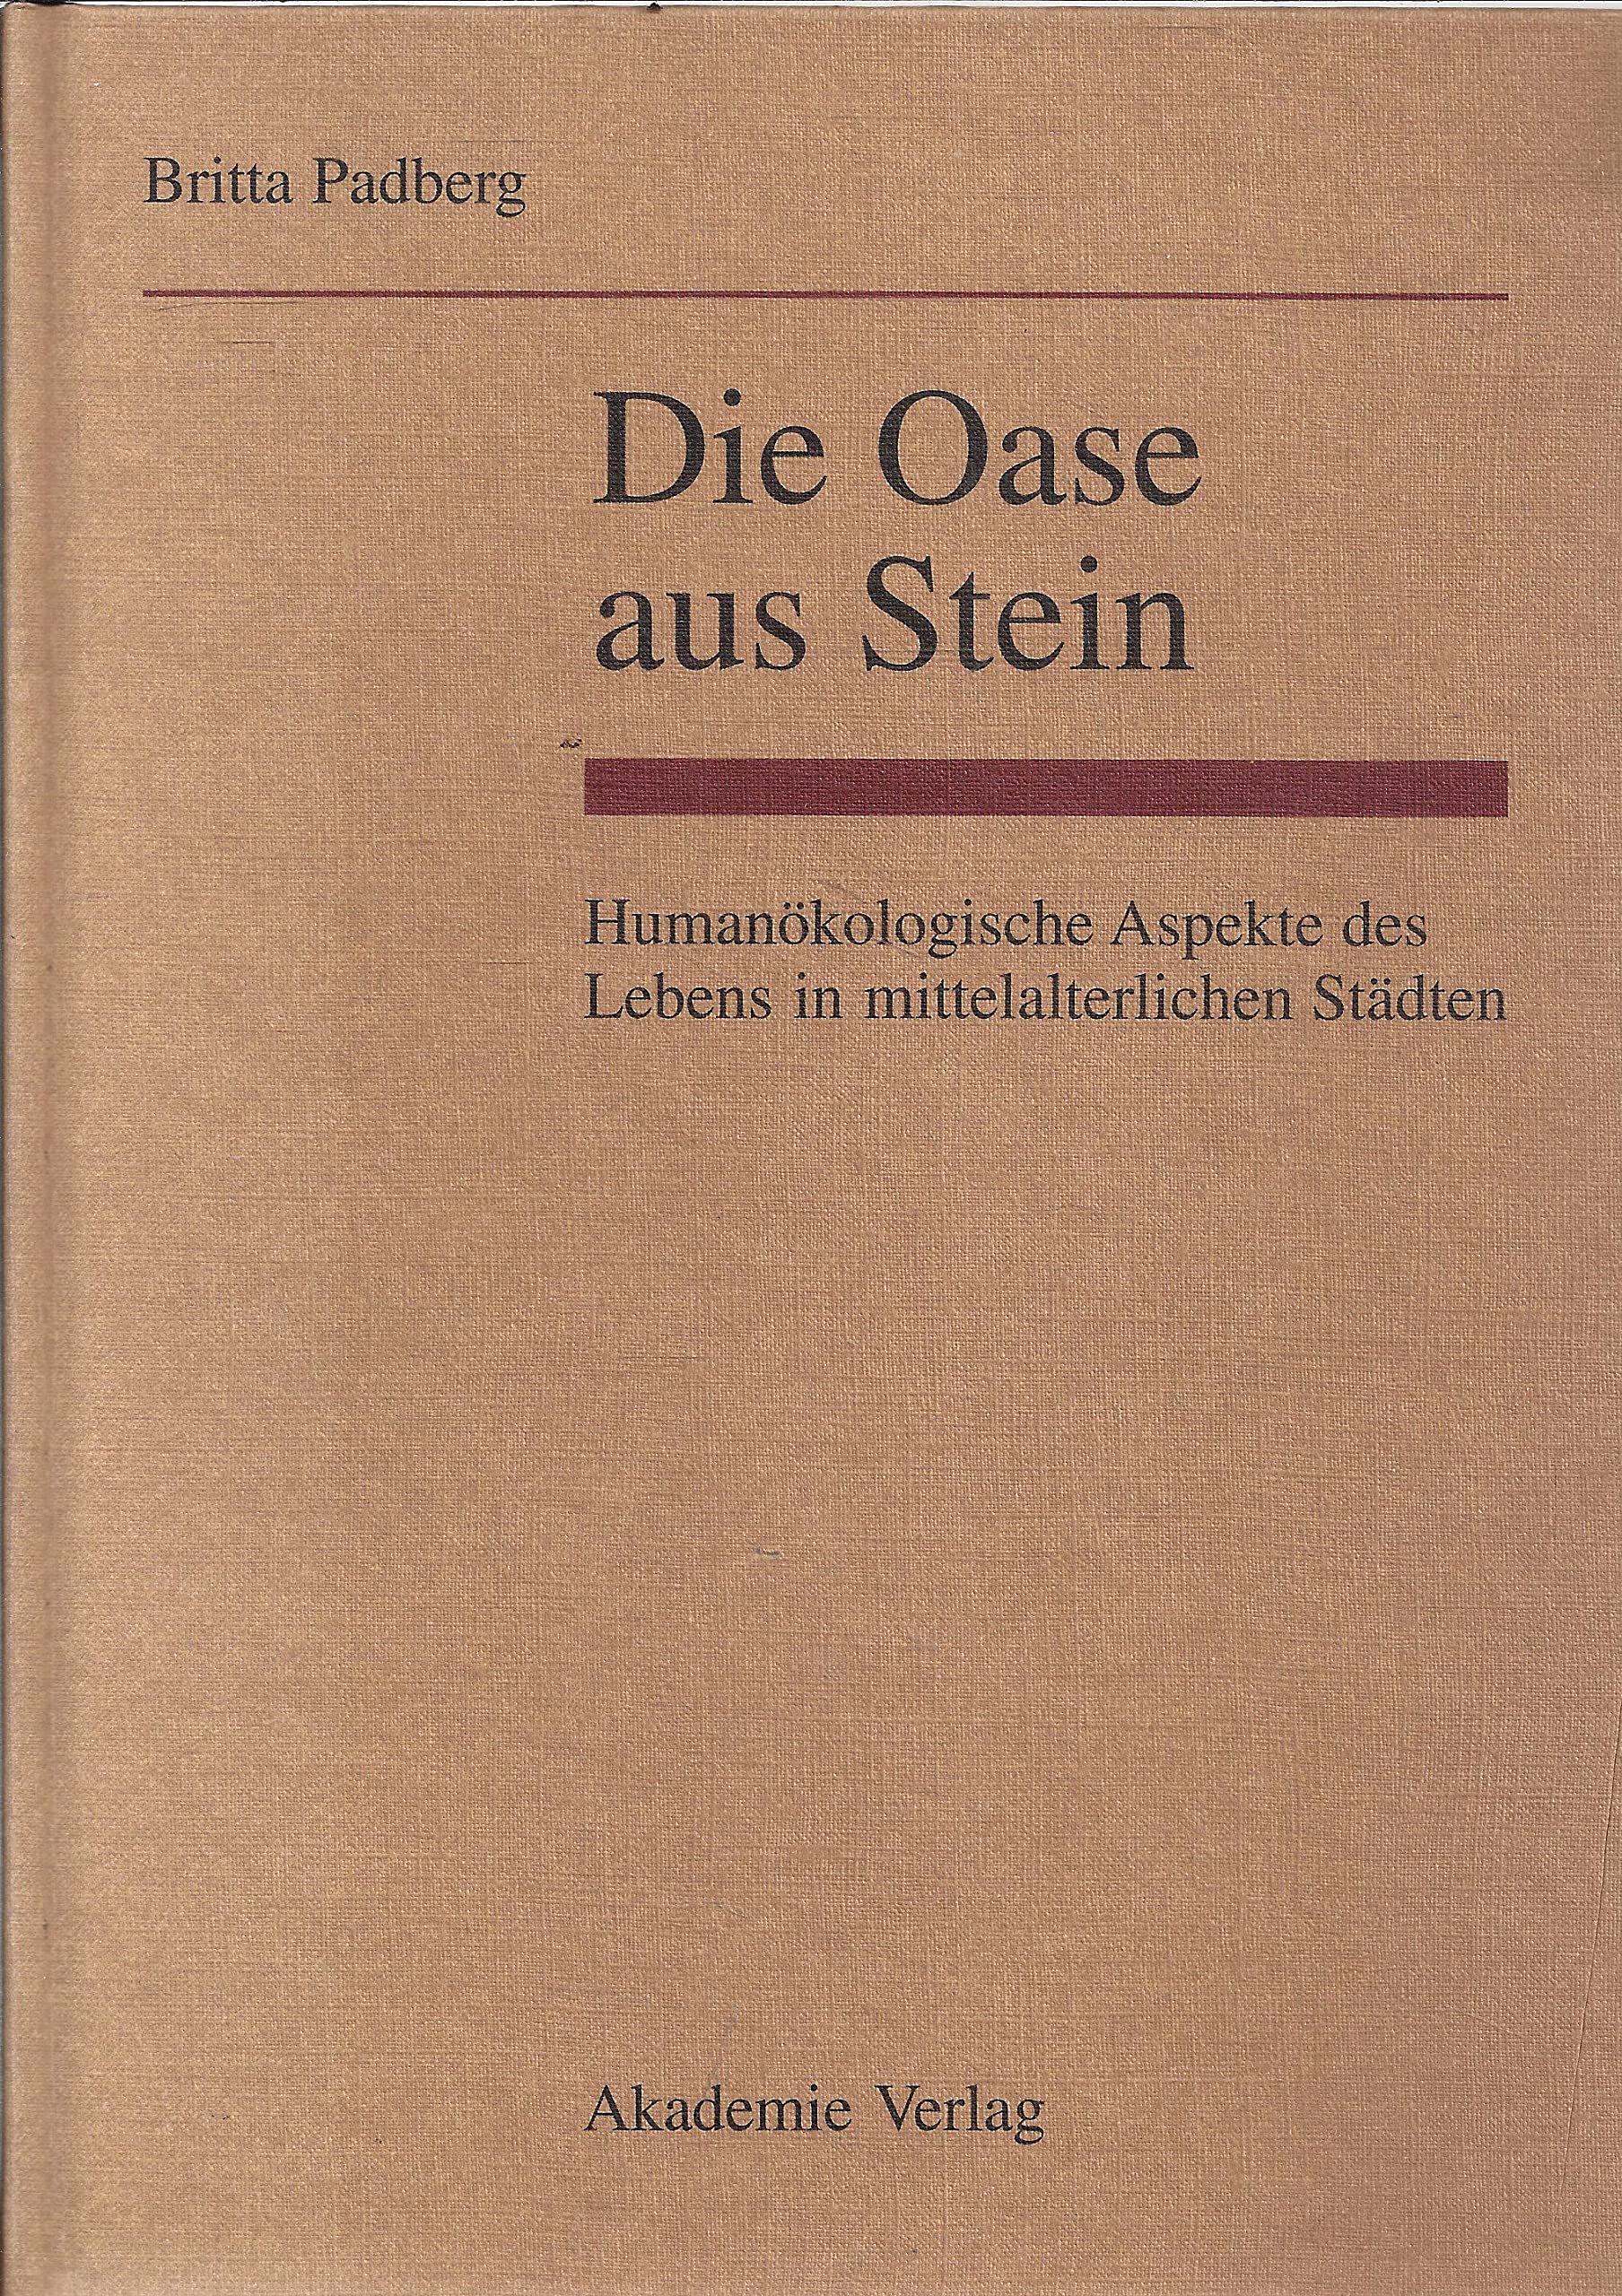 Die Oase aus Stein. Humanökologische Aspekte des Lebens in mittelalterlichen Städten. - Padberg, Britta